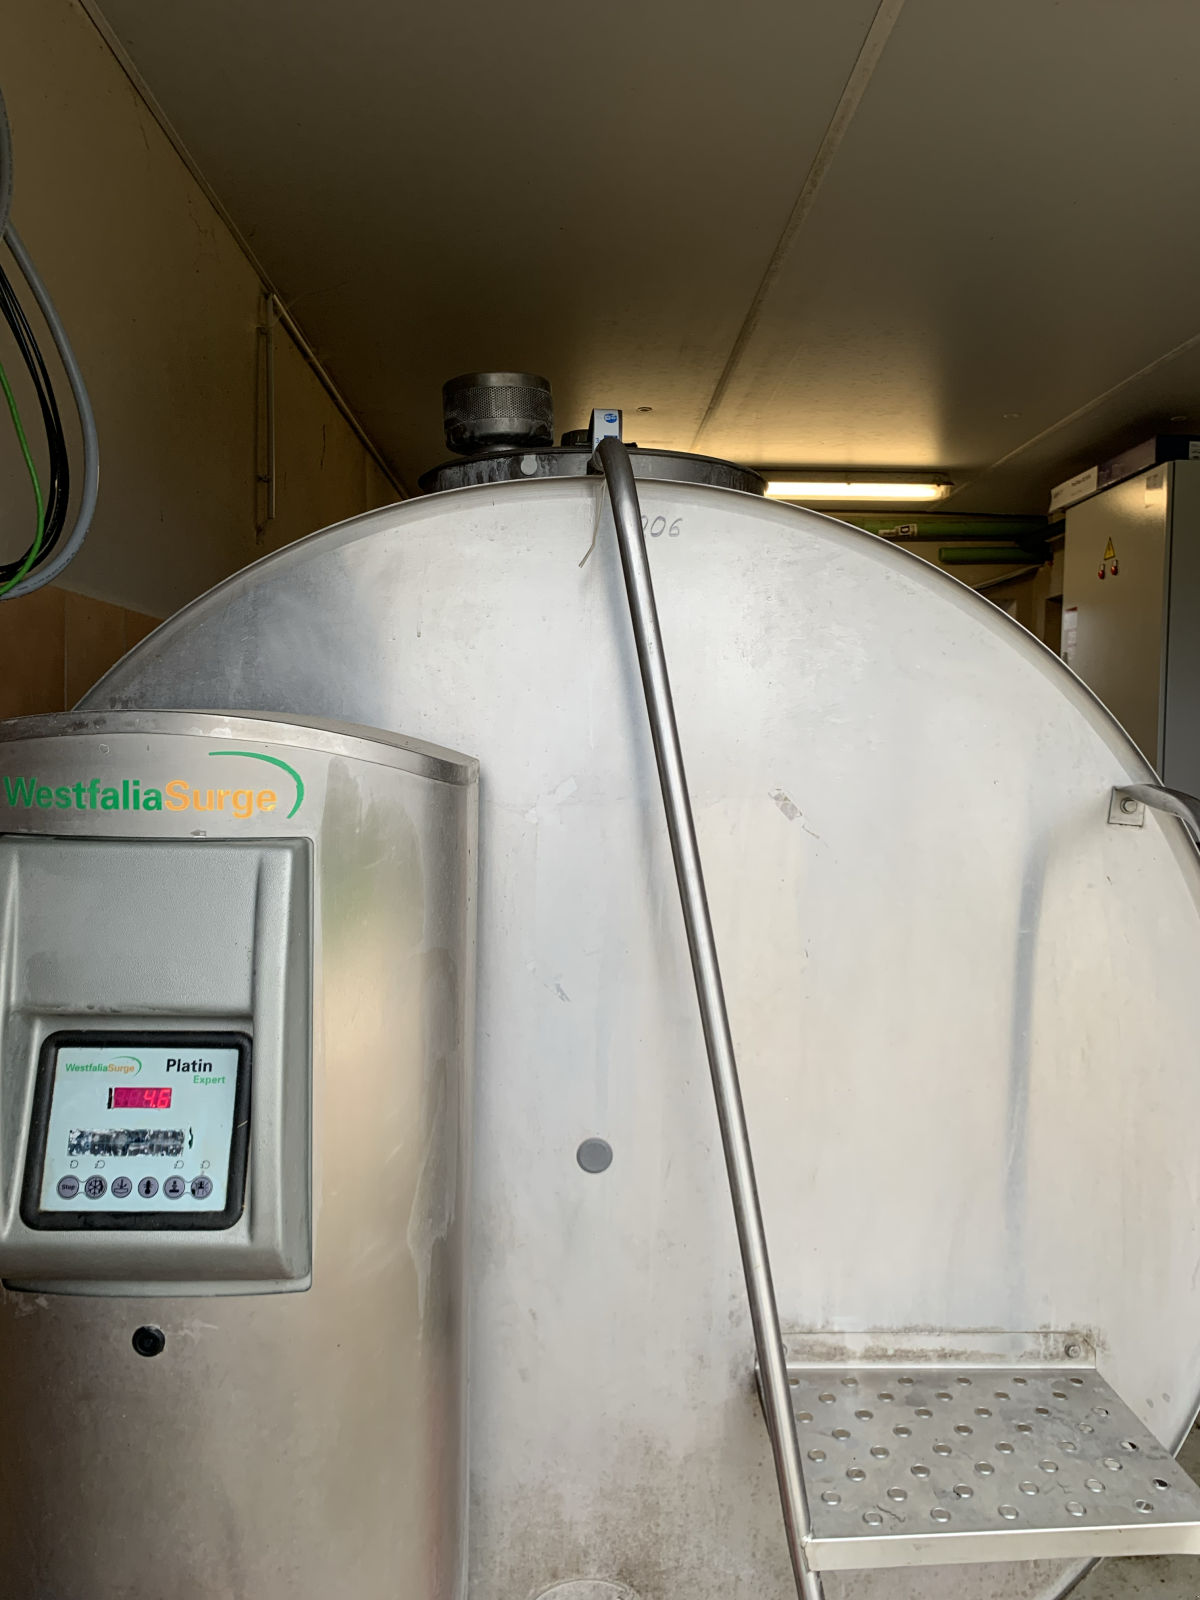 Milchkühltank типа GEA Milchkühlung, Gebrauchtmaschine в Bad Feilnbach (Фотография 1)